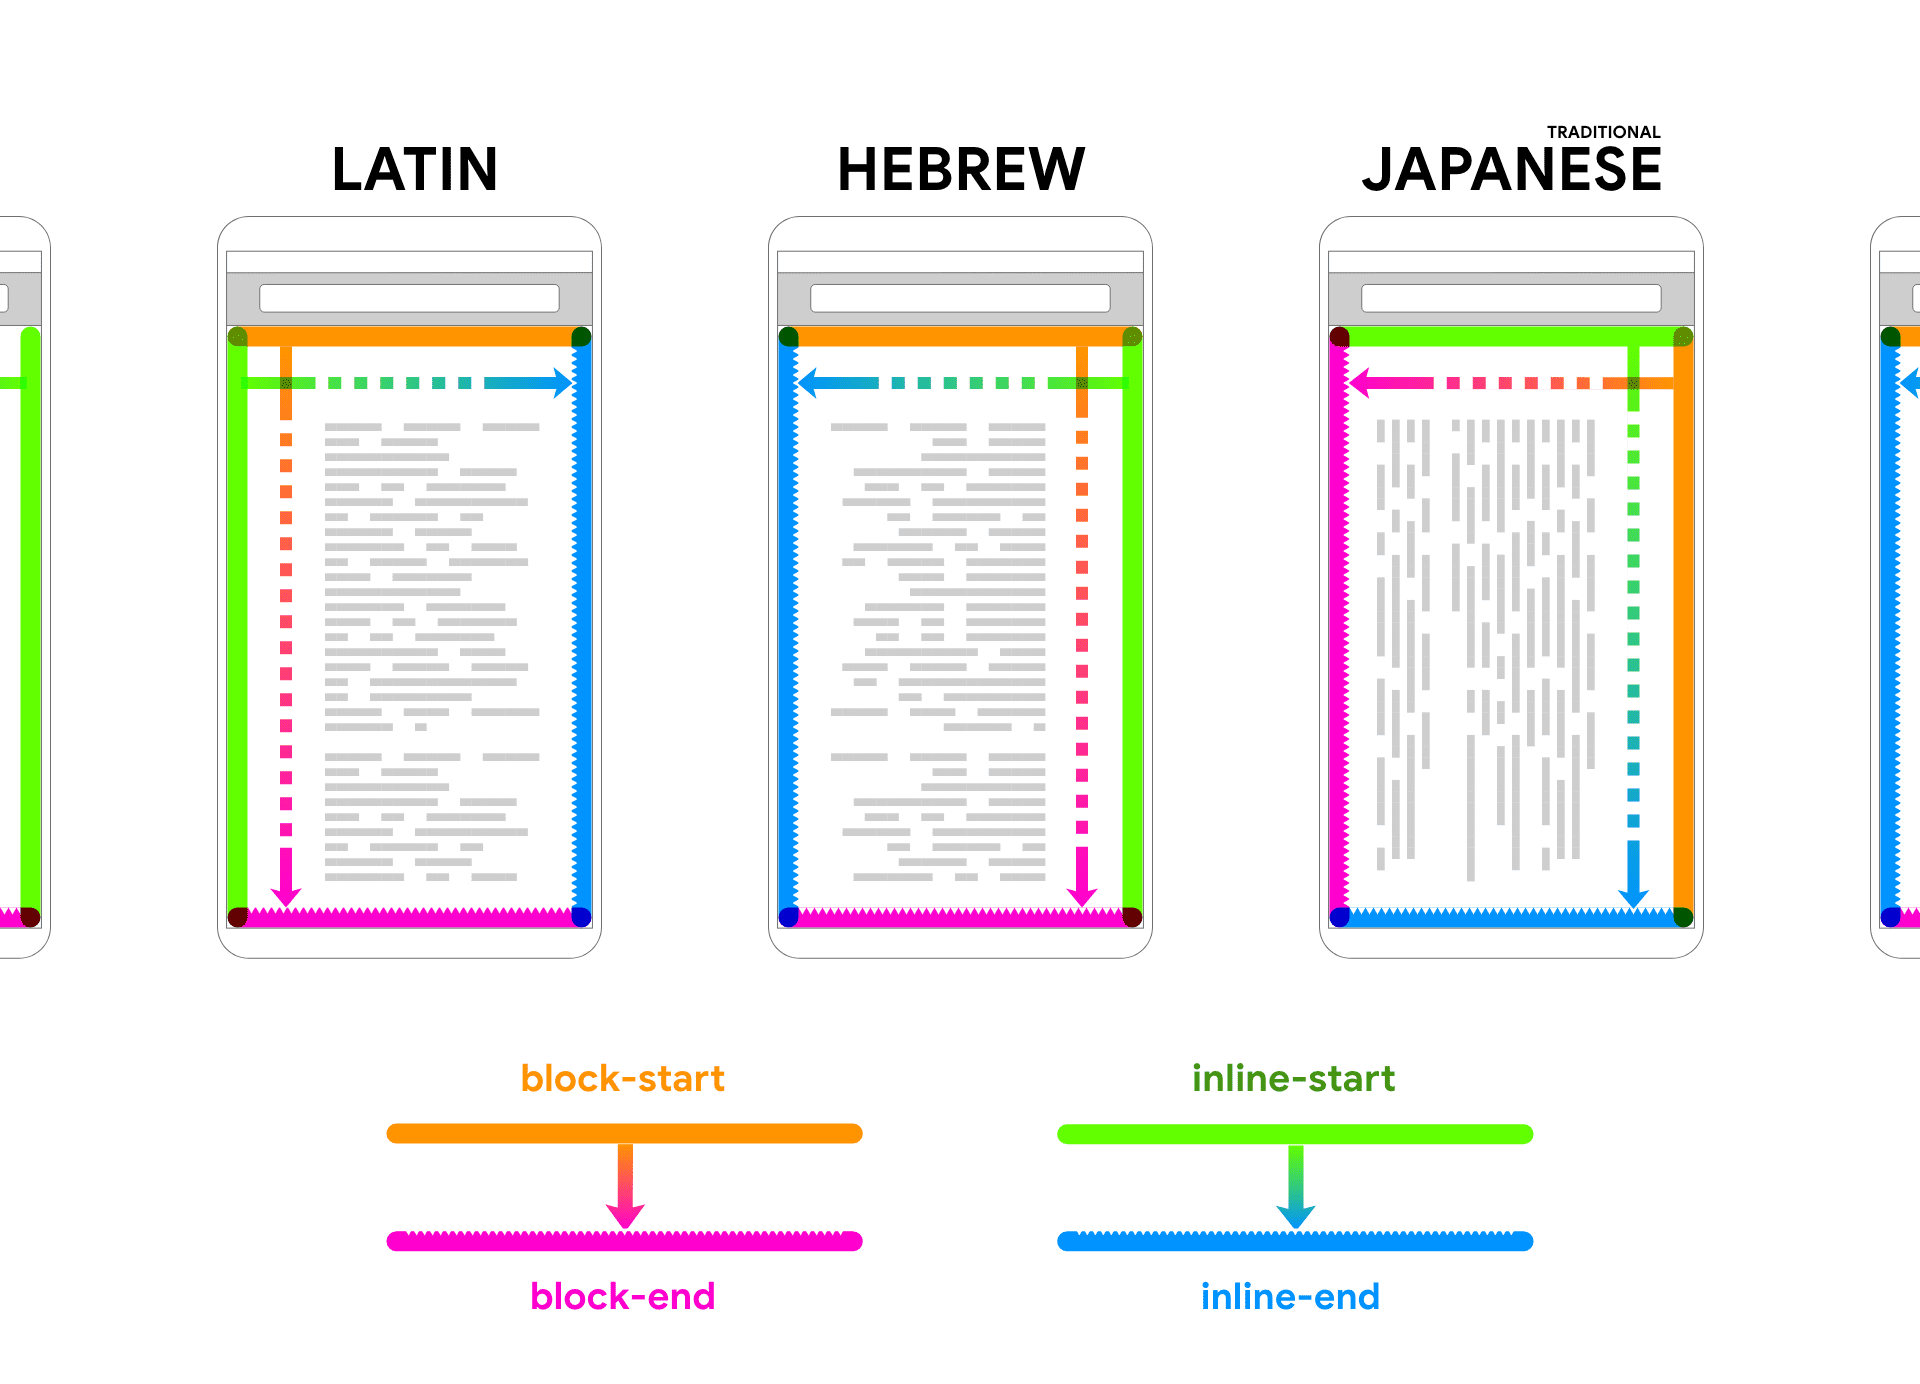 Platzhaltertext in einem Geräte-Frame wird in lateinischen, hebräischen und japanischen Varianten angezeigt. Pfeile und Farben folgen dem Text, um die beiden Richtungen von Block und Inline miteinander zu verknüpfen.